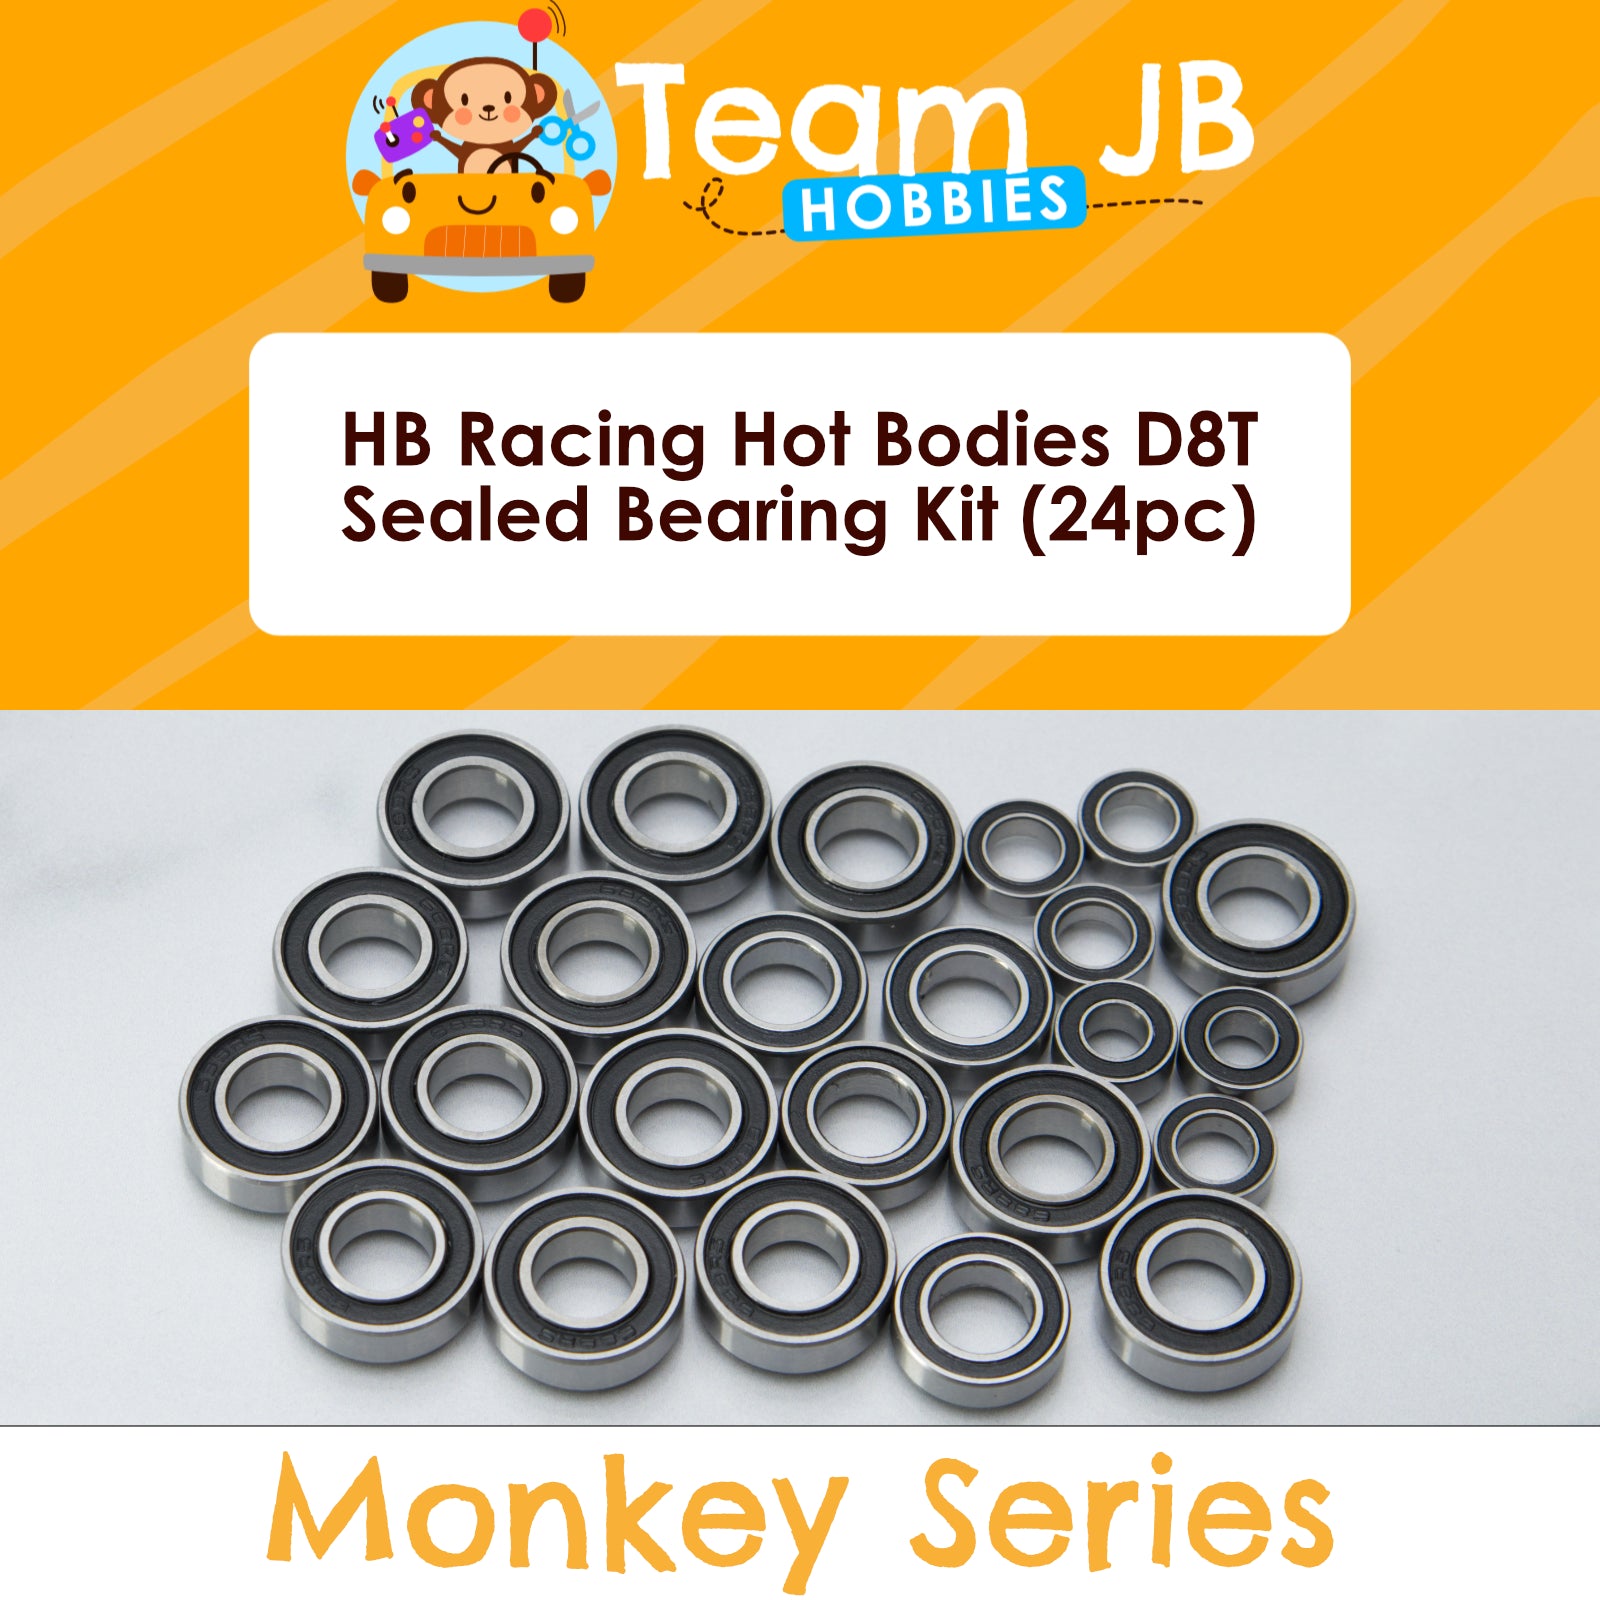 HB Racing Hot Bodies D8T - Sealed Bearing Kit